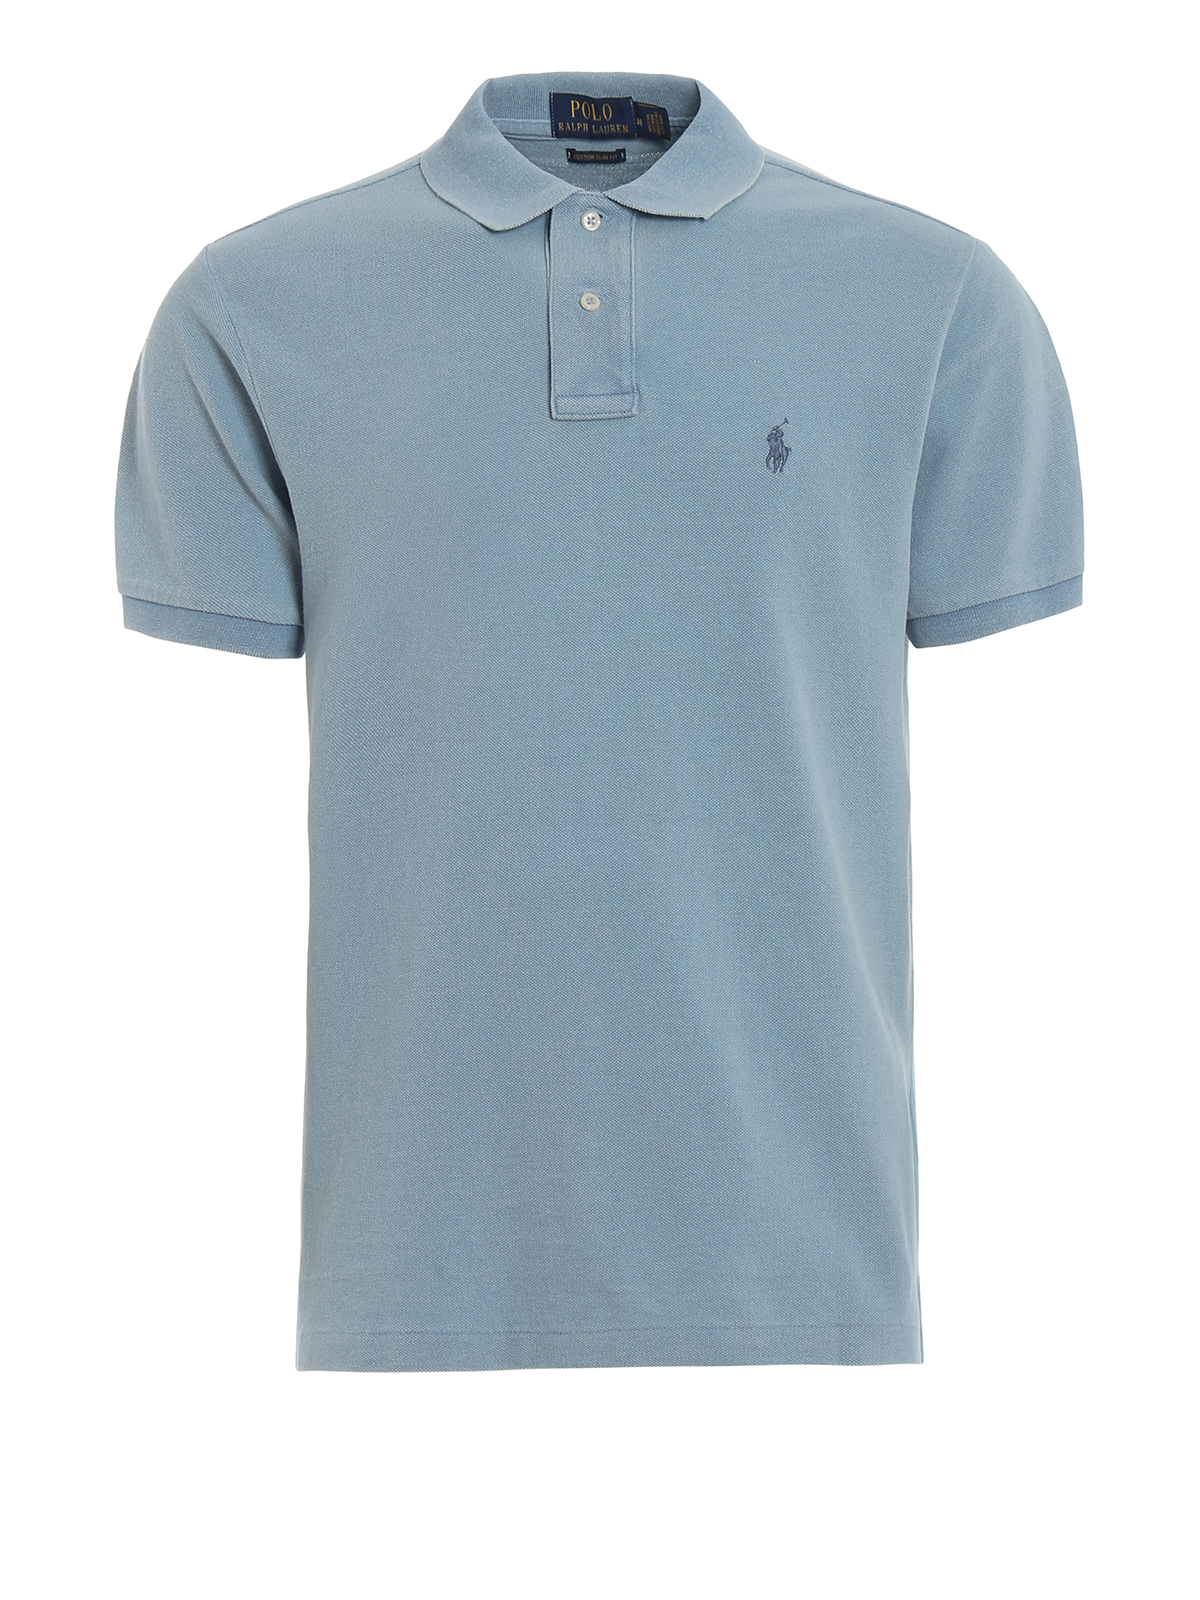 Polo shirts Polo Ralph Lauren - Light blue pique cotton polo shirt -  710680784086